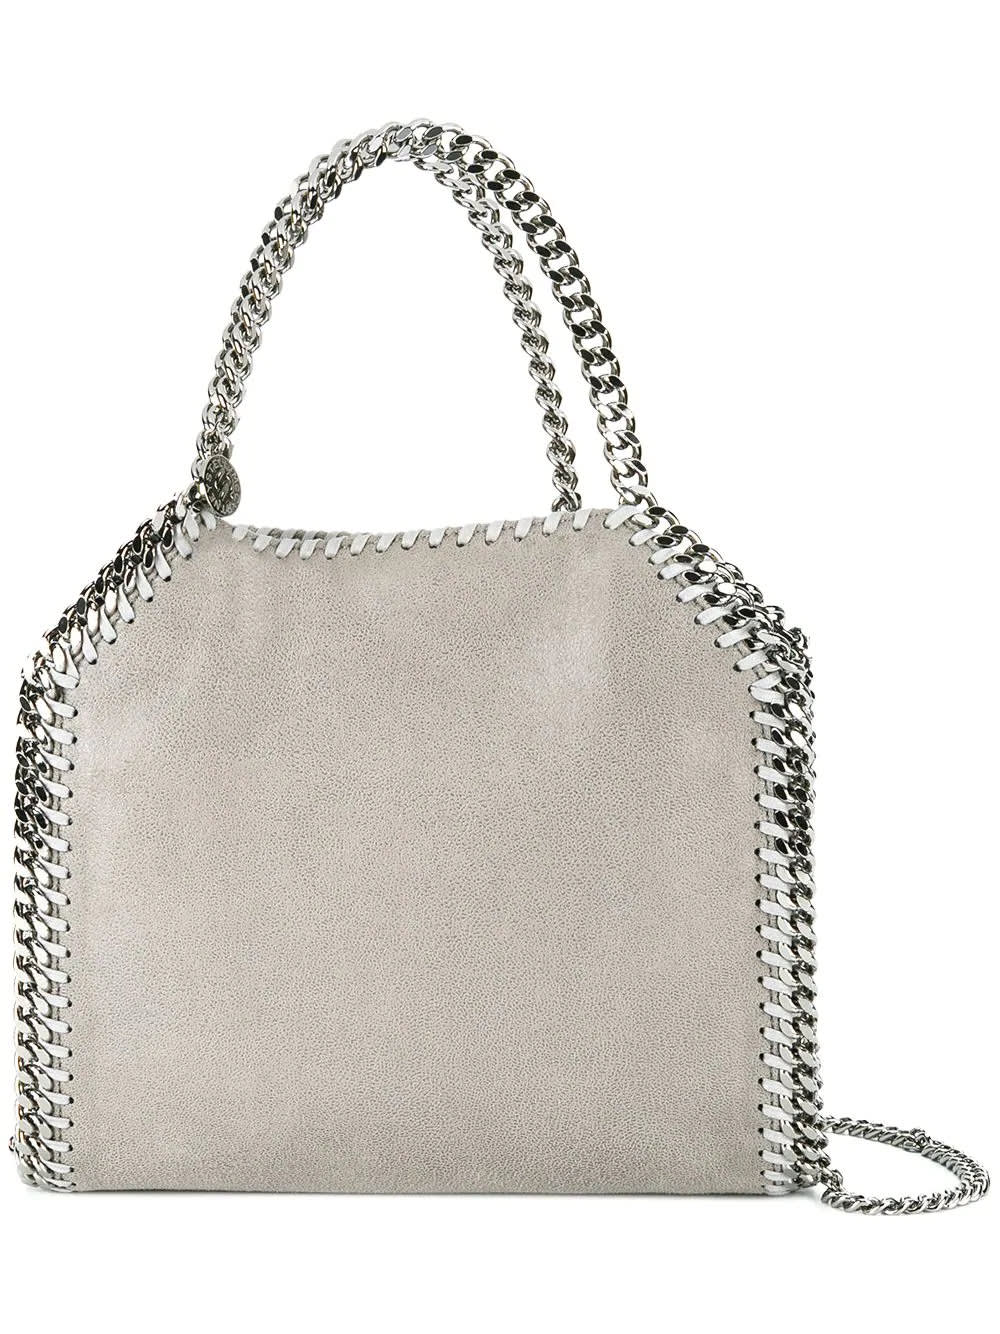 Stella McCartney Sand And Silver Mini Falabella Tote Bag